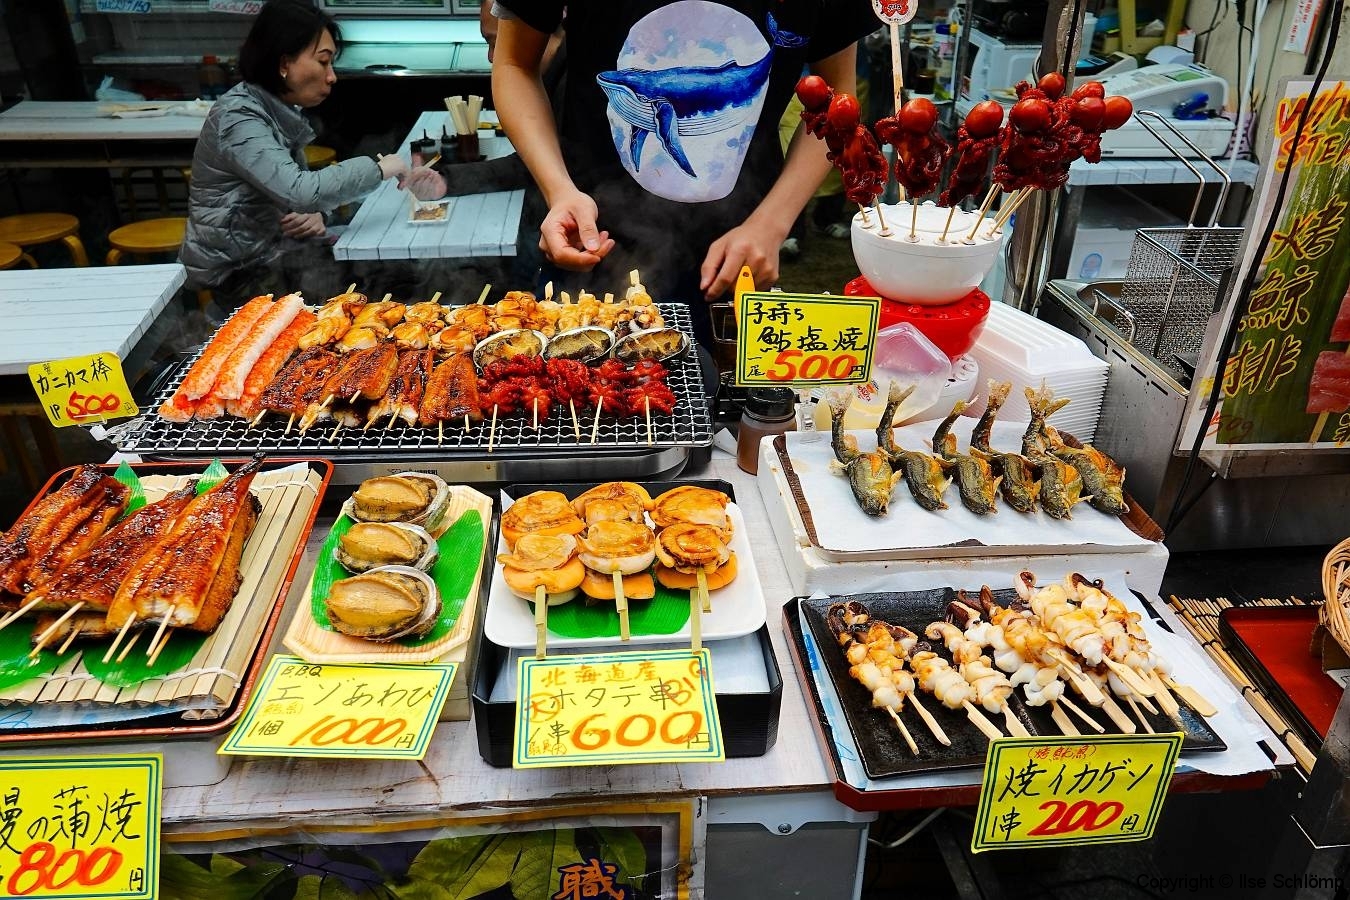 Japan, Osaka, Kuromon Market